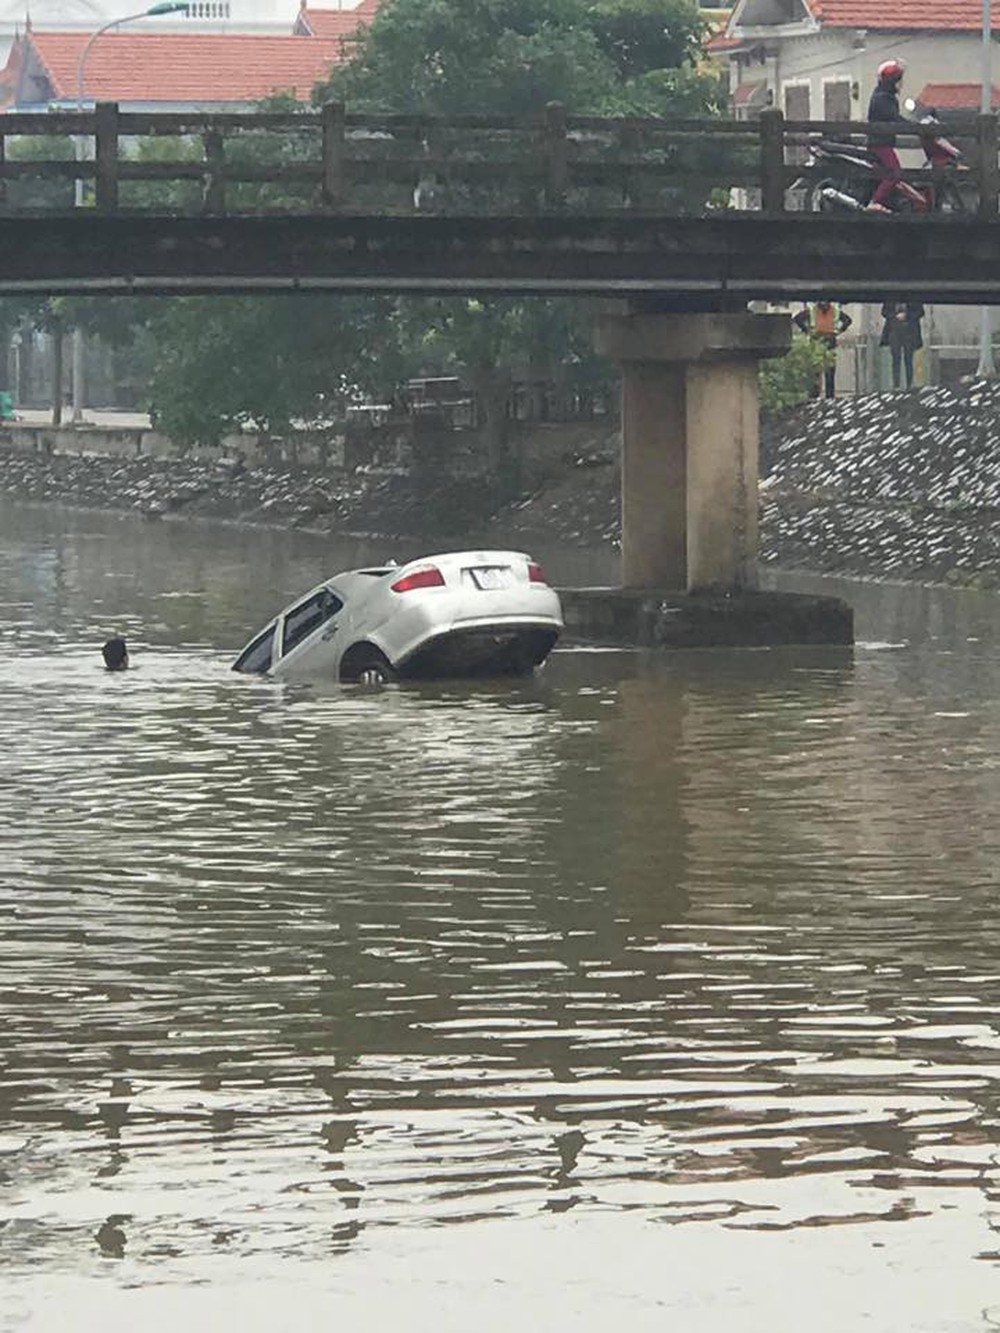 Chiếc ô tô ngụp lặn dưới sông, hình ảnh đang được chia sẻ nhiều nhất ngày thứ 6 - Ảnh 2.